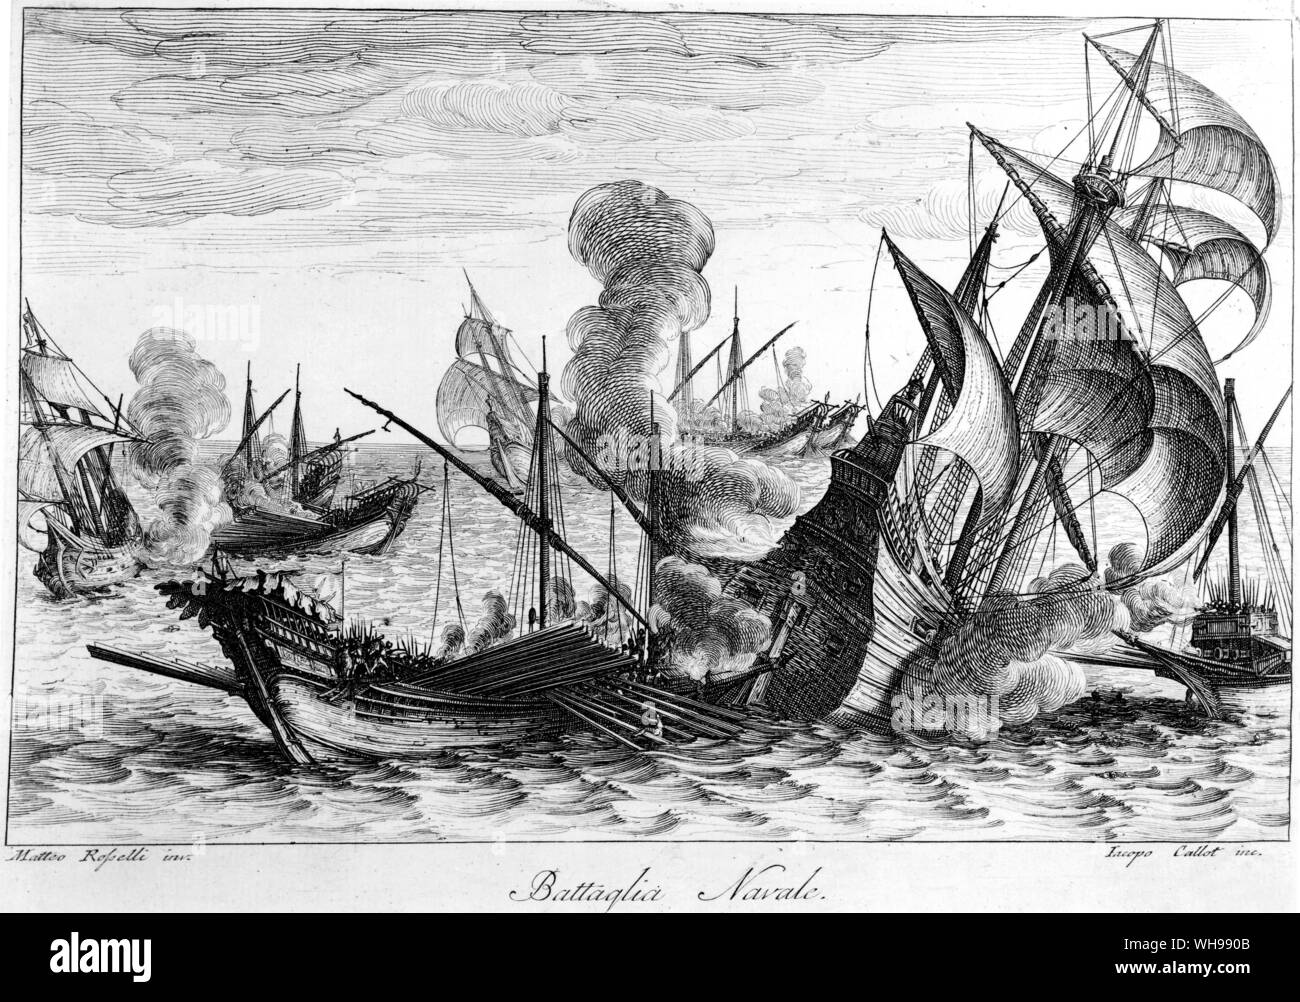 La guerra europea/Spagna: il remo-propulsione galley è rimasto il vaso principale nel Mediterraneo, ma è stato gradualmente sostituito da galeone, dotata di vele.. Foto Stock